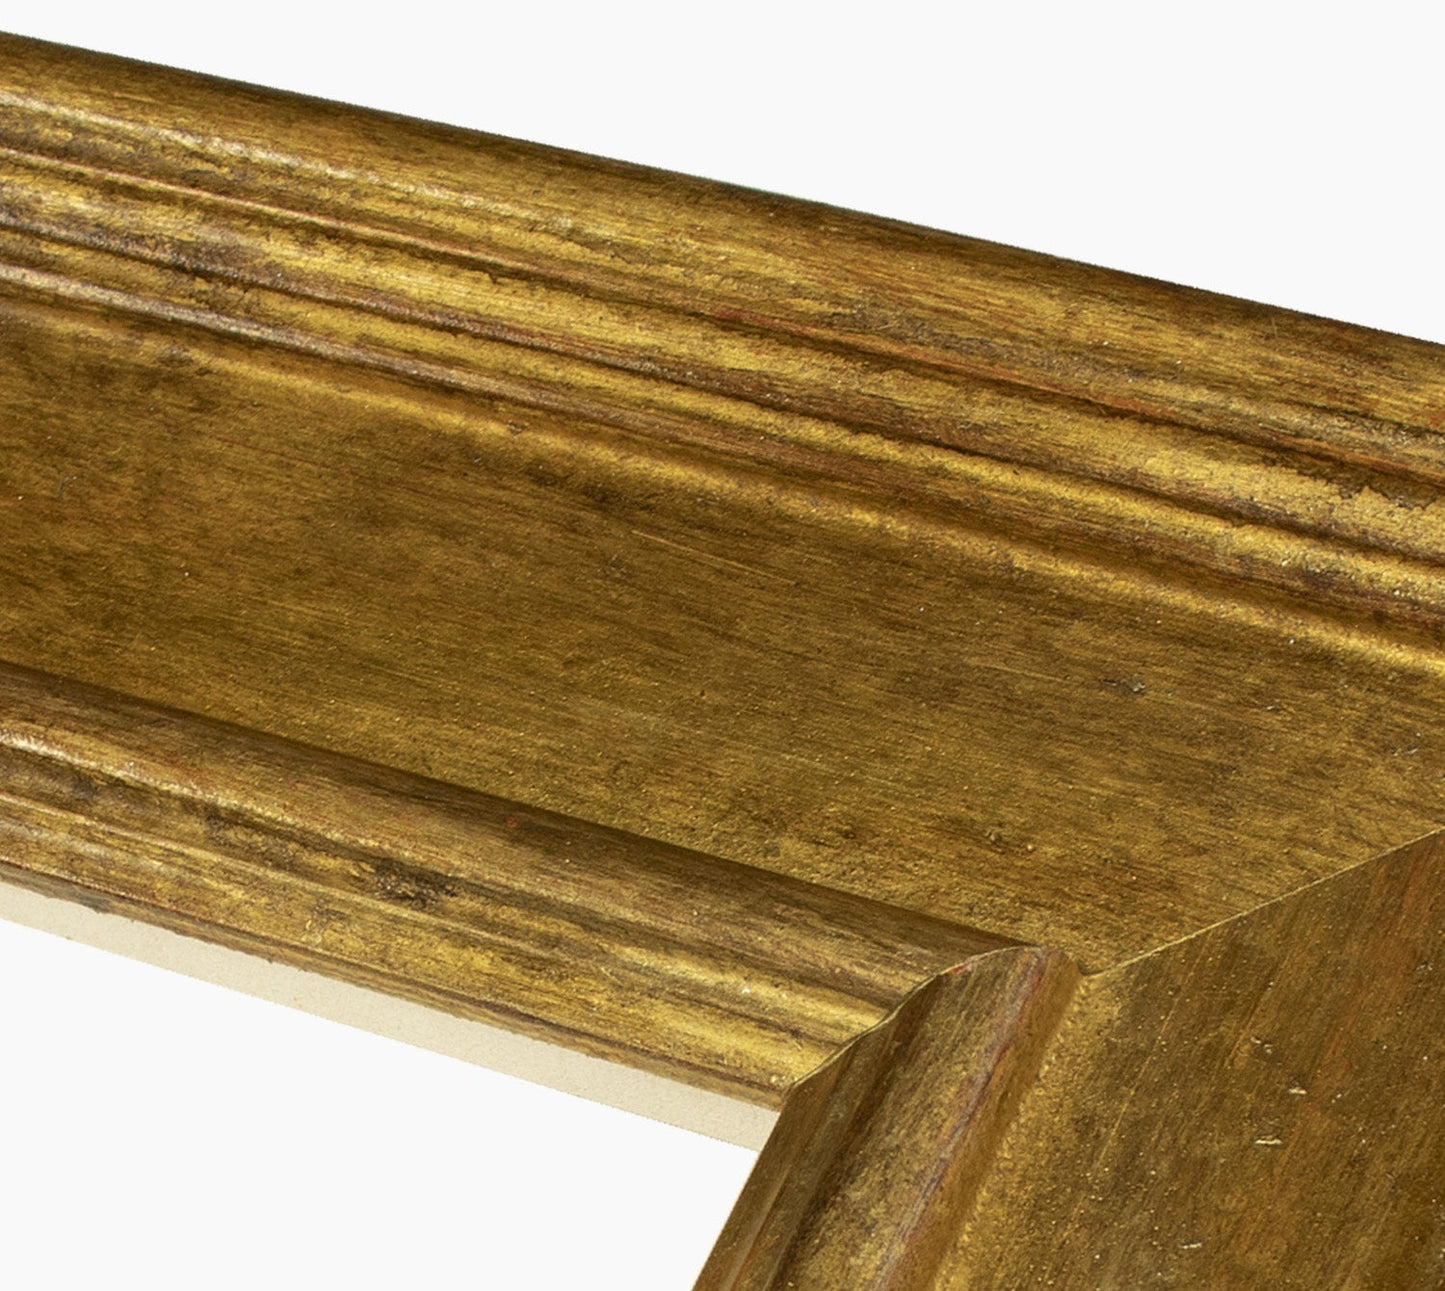 740.230 cadre en bois à la feuille d'or antique mesure de profil 100x50 mm Lombarda cornici S.n.c.